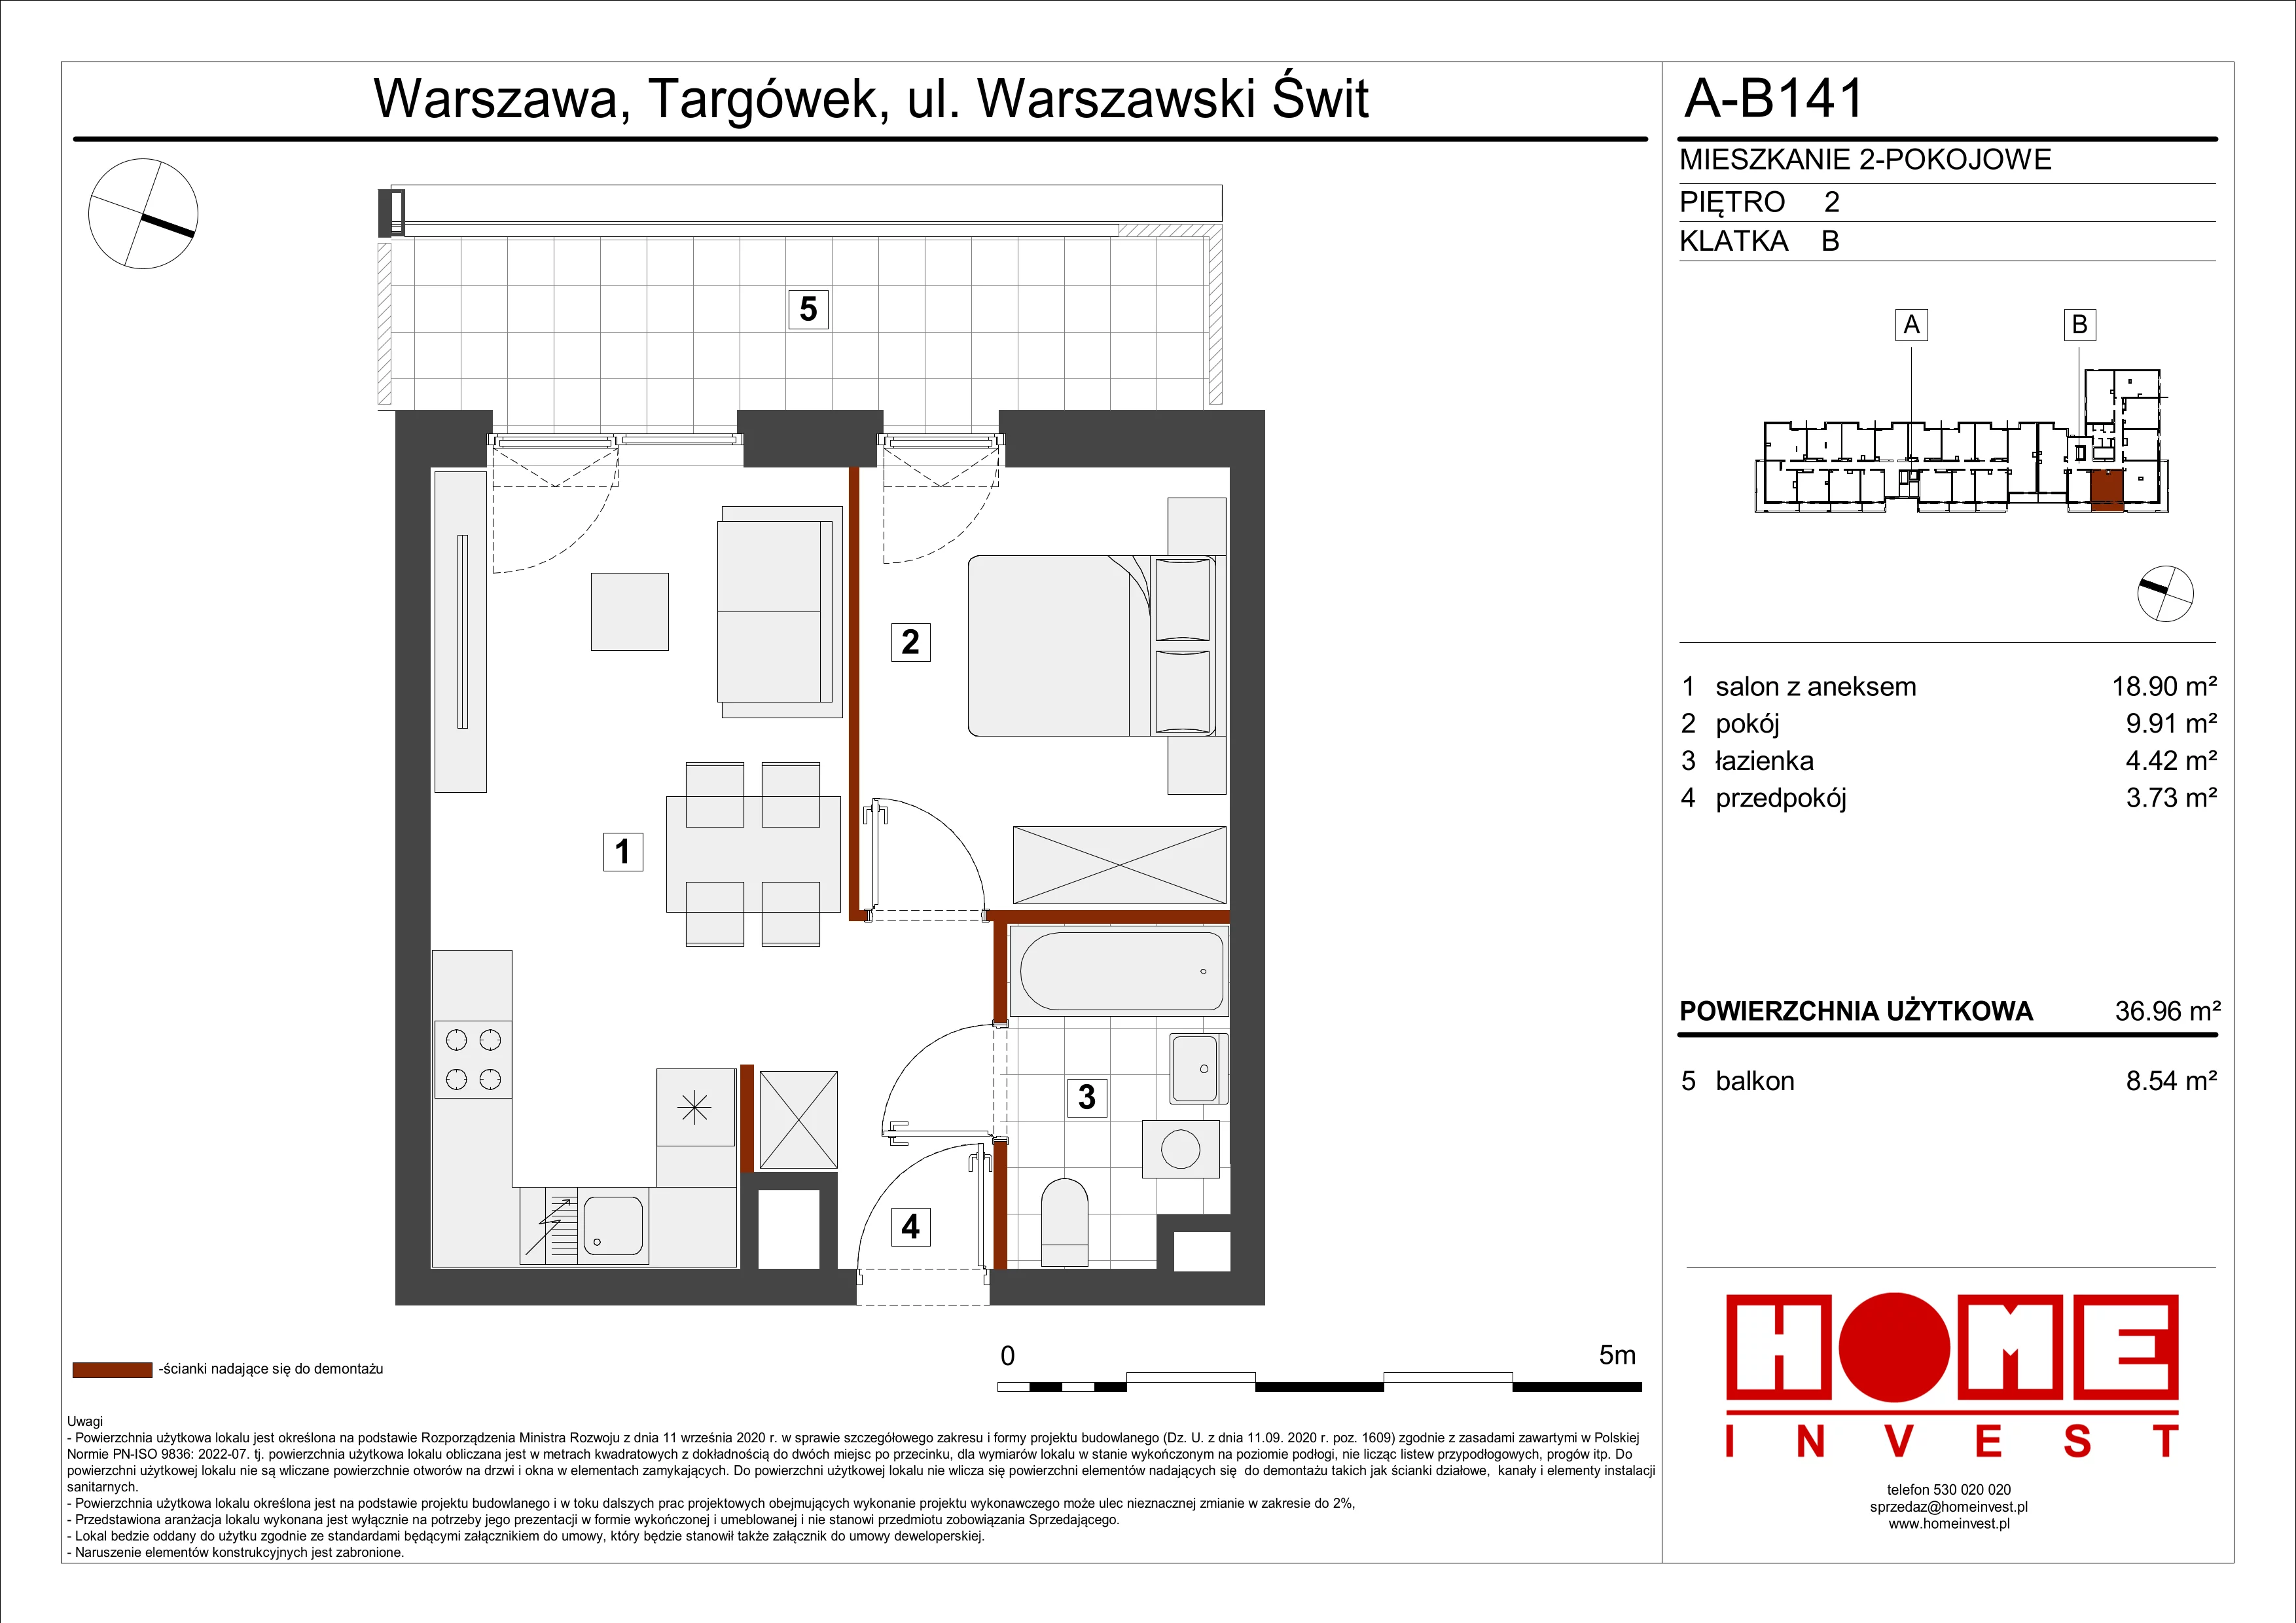 Mieszkanie 36,96 m², piętro 2, oferta nr A-B141, Warszawski Świt, Warszawa, Targówek, Bródno, ul. Warszawski Świt 5